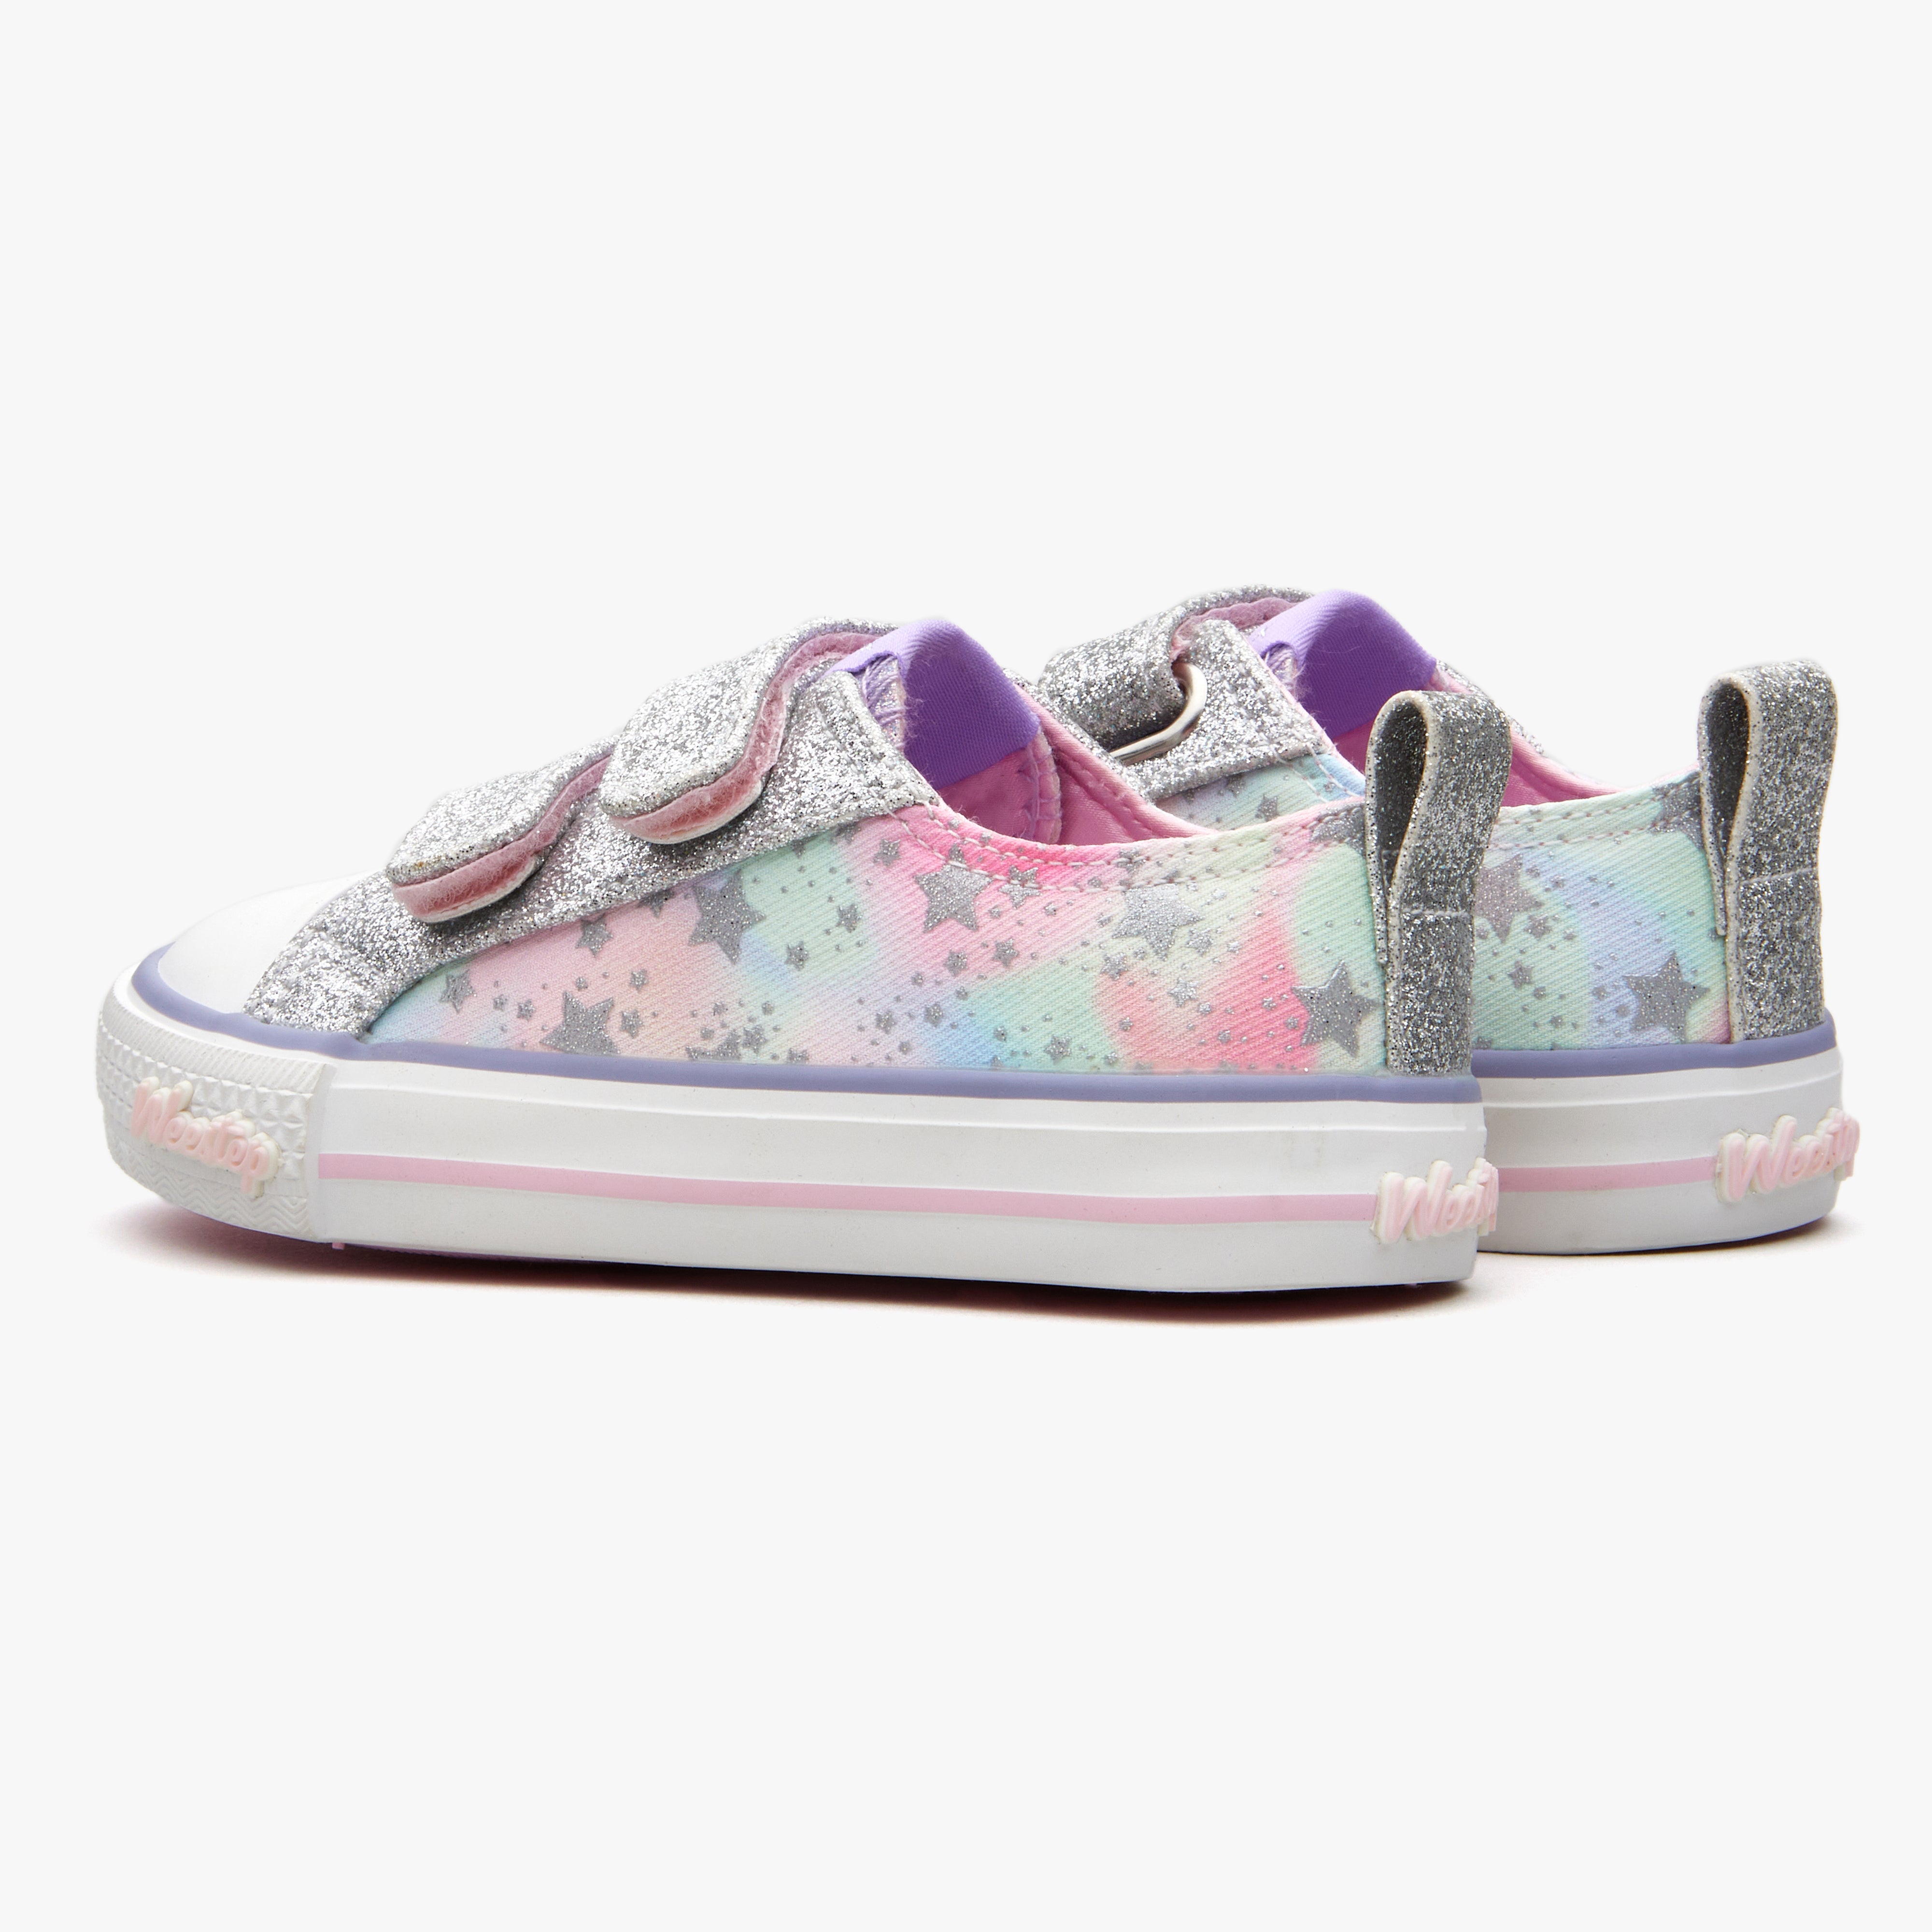 Weestep Toddler/Littke Kid Girls Glitter School Casual Sneakers